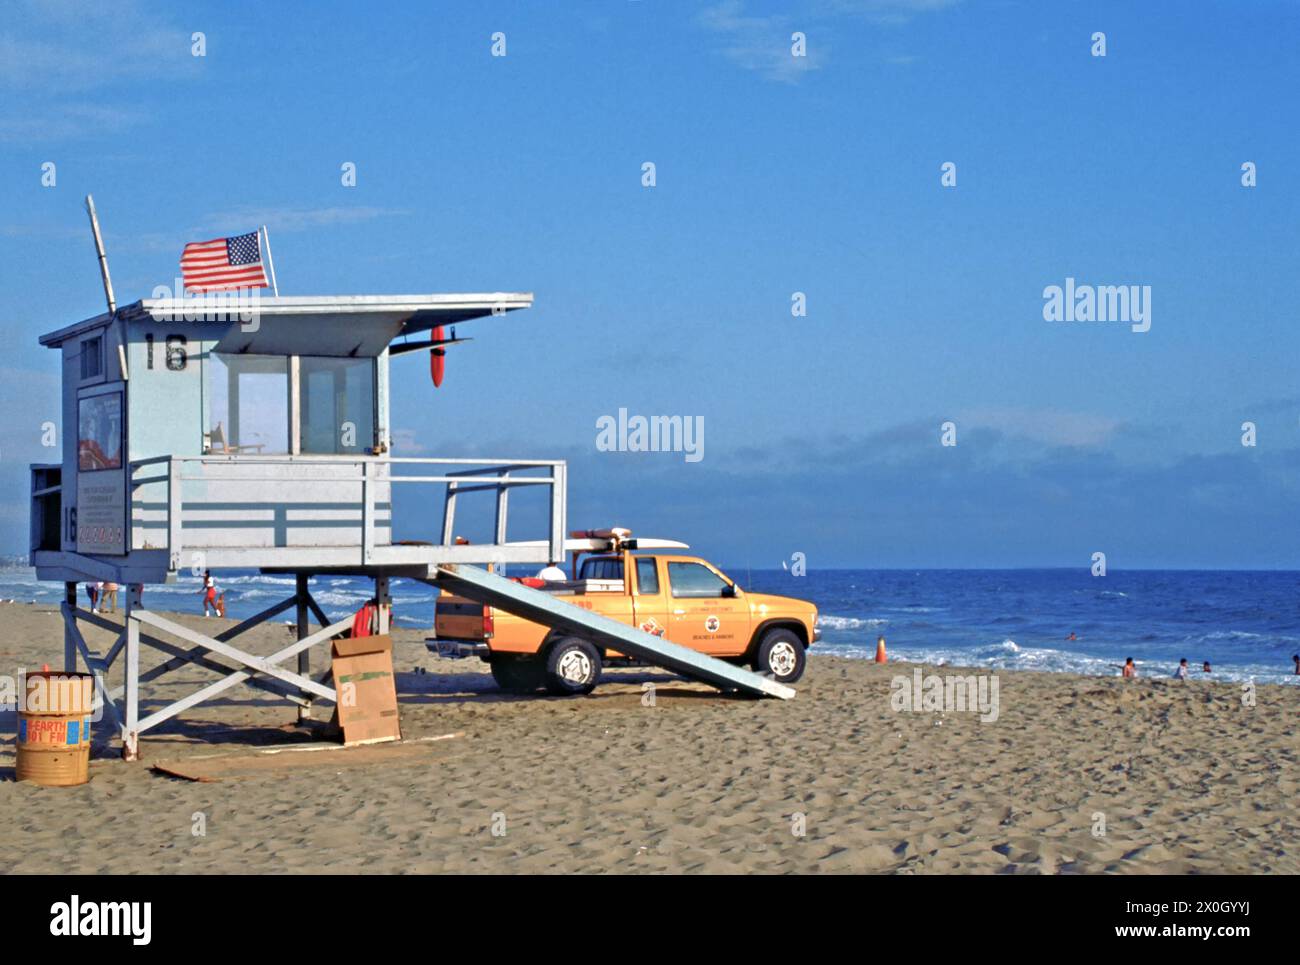 Maison de plage Baywatch à Santa Monica sur la plage du Pacifique, Los Angeles, Californie, États-Unis [traduction automatique] Banque D'Images